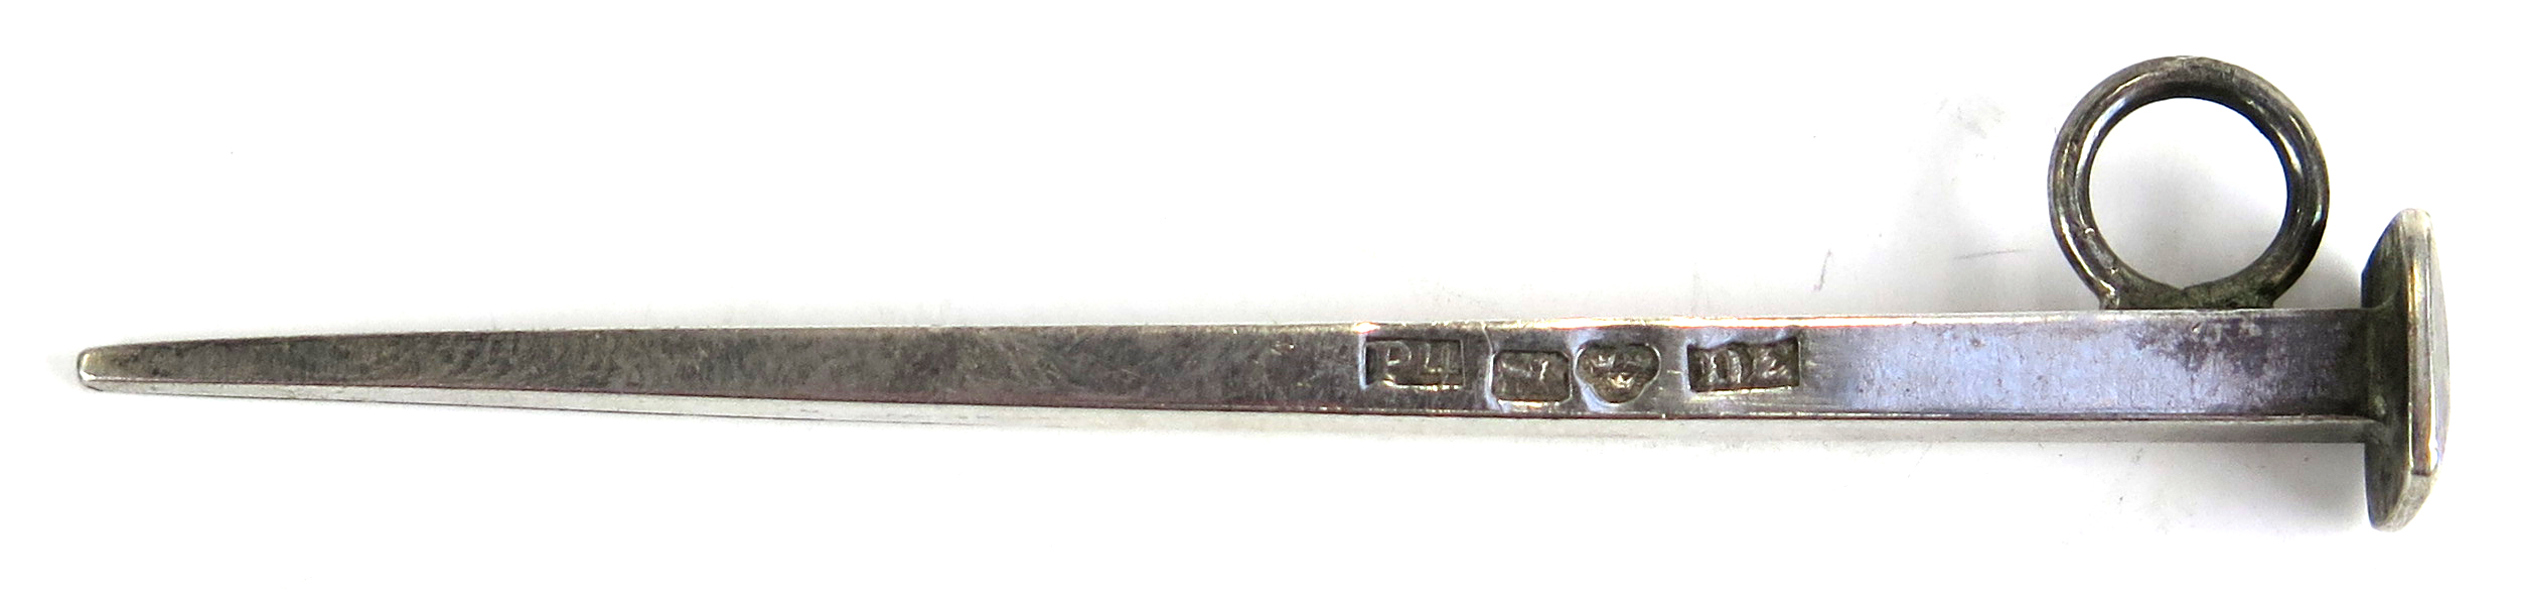 Pipstoppare/krats, silver, 1800-talets 1 hälft, konisk med ögla, stämplad Daniel Ekelund Kalmar 1845, l 7,5 cm_26218a_lg.jpeg